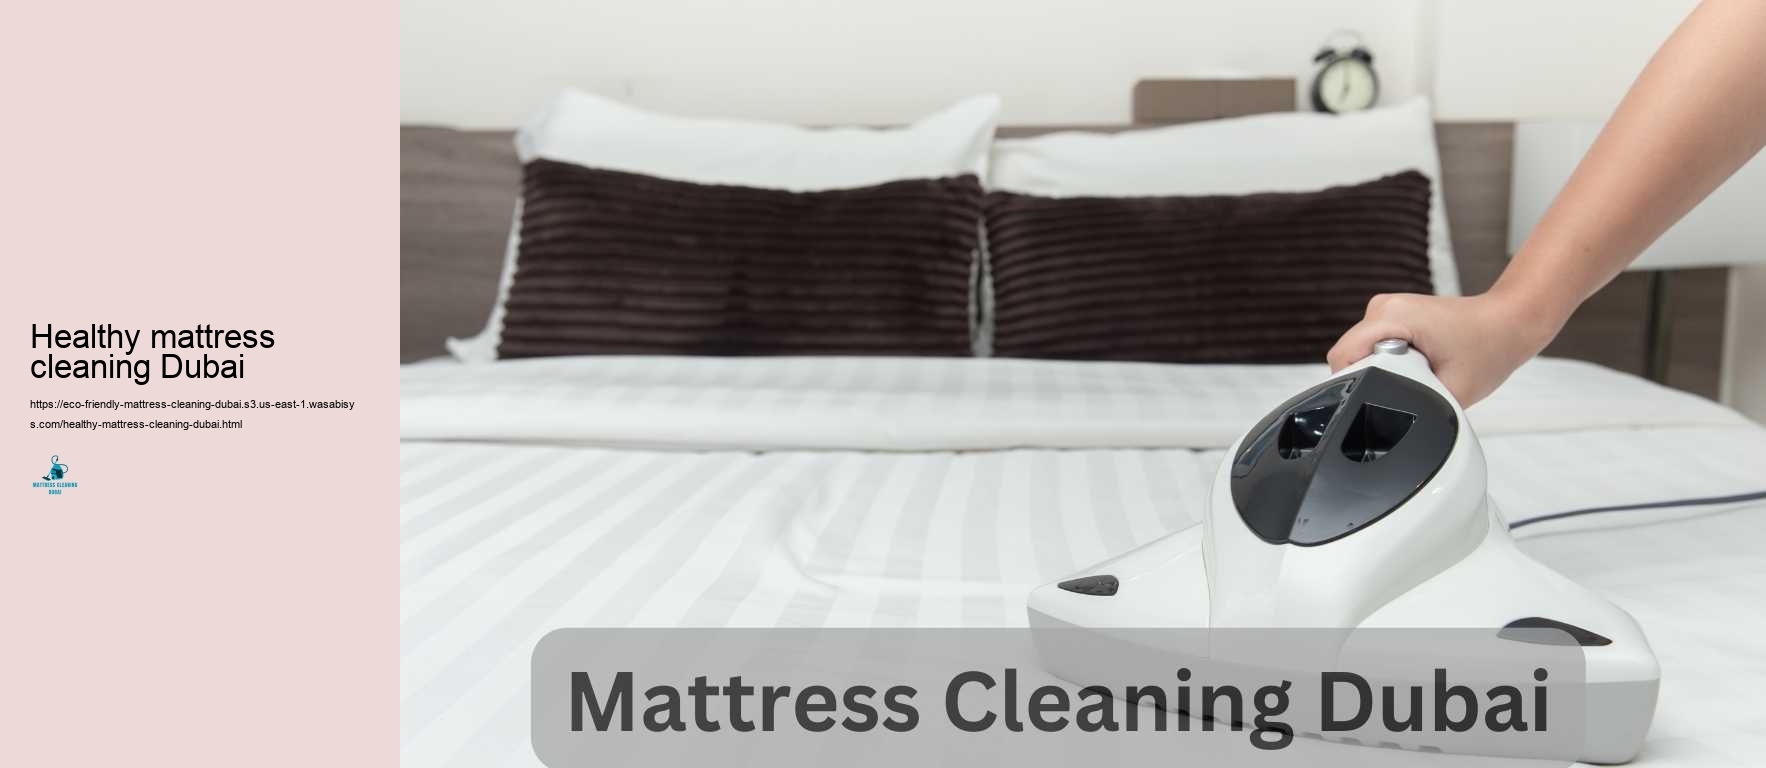 Healthy mattress cleaning Dubai